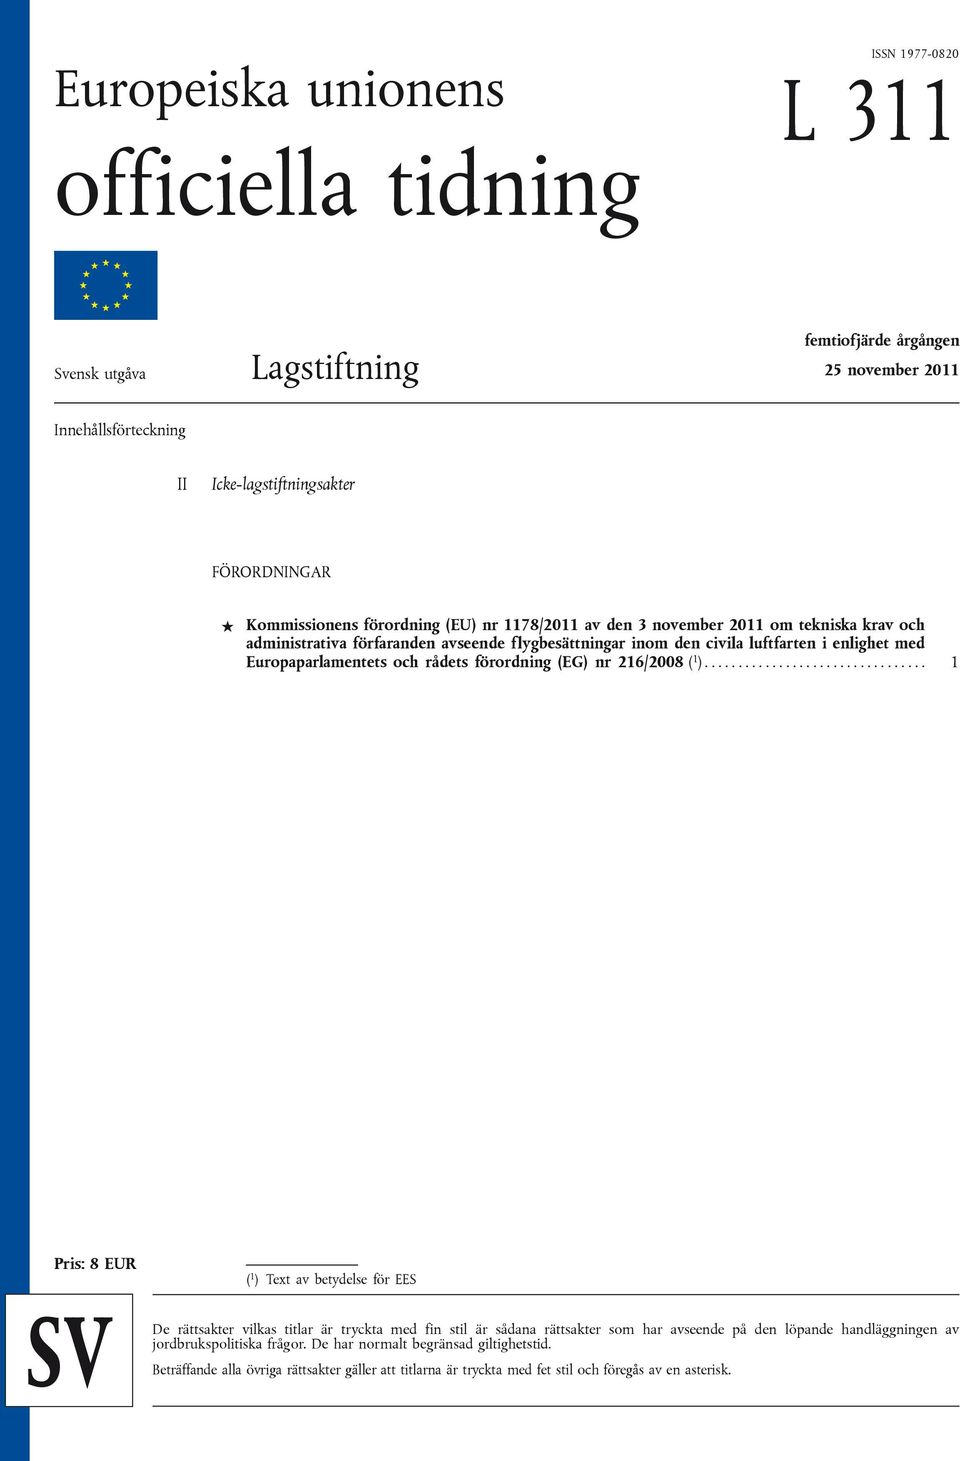 Europaparlamentets och rådets förordning (EG) nr 216/2008 ( 1 ).